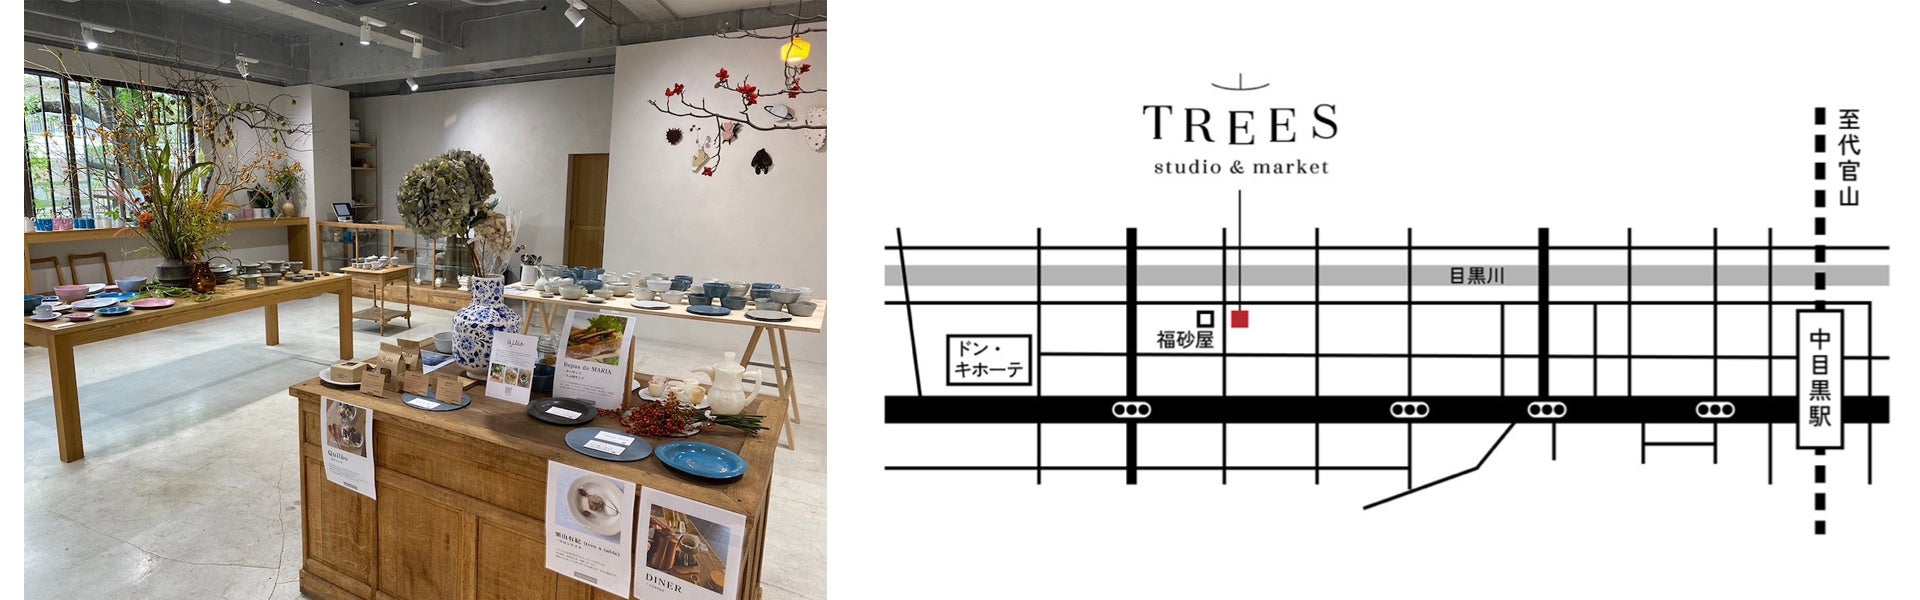 株式会社S-SIZEが運営する「TREES – studio ＆ market」が新しいアートプロジェクト「“TOKYO CITY POP” gallery project」をスタート!